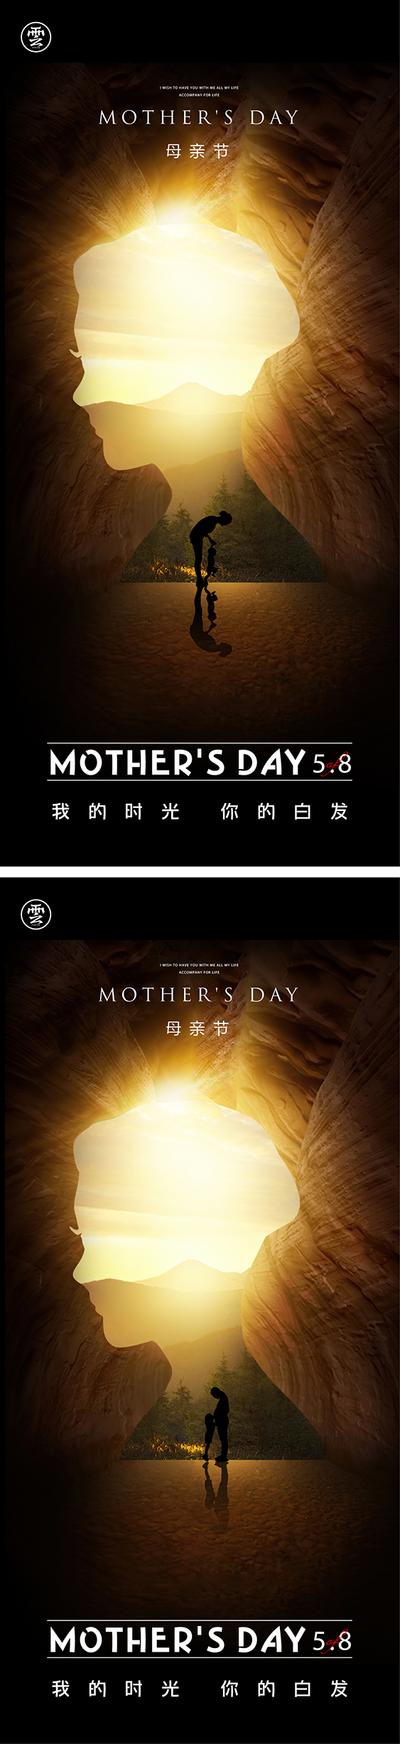 南门网 广告 海报 节日 母亲节 系列 投影 光晕